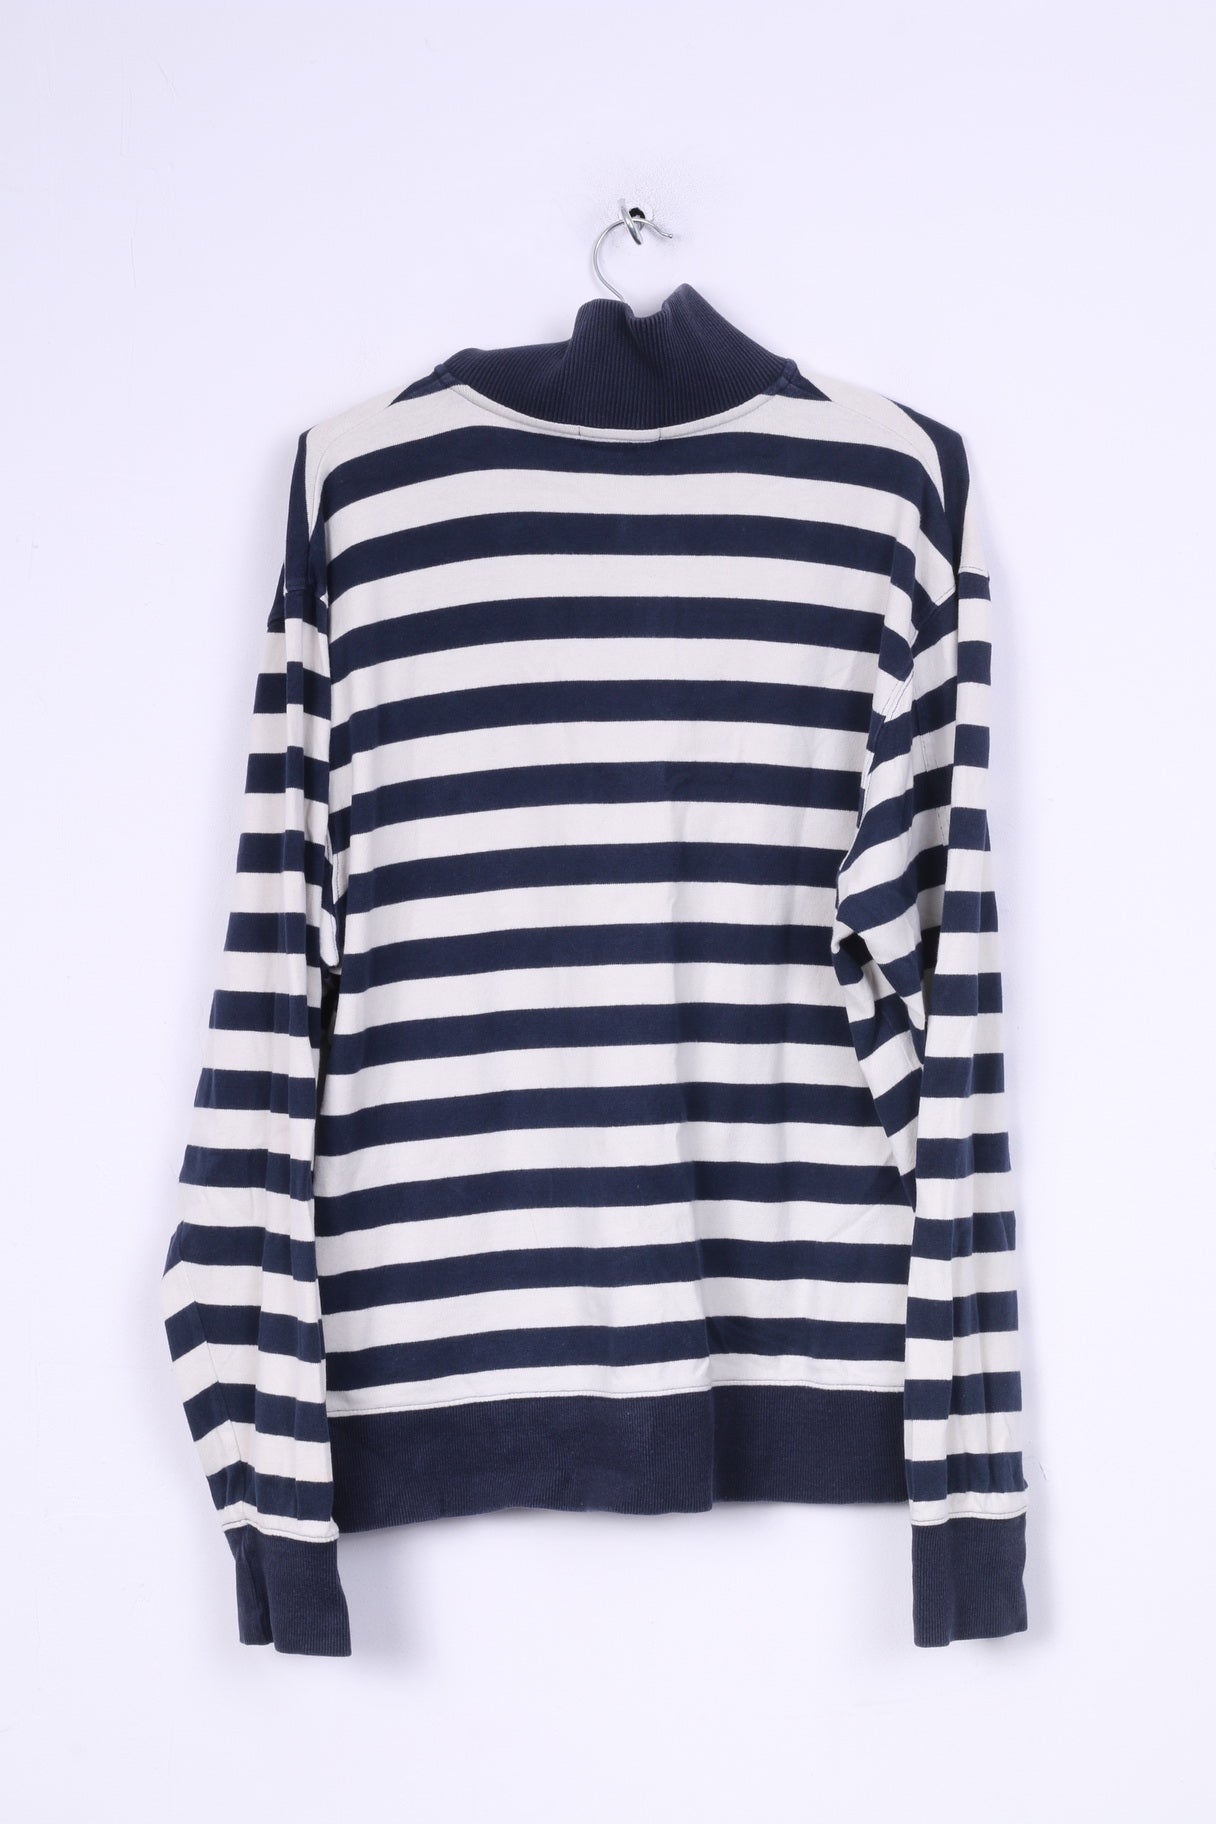 Gant Mens XL Jumper Cotton Sweater Striped Cotton Navy